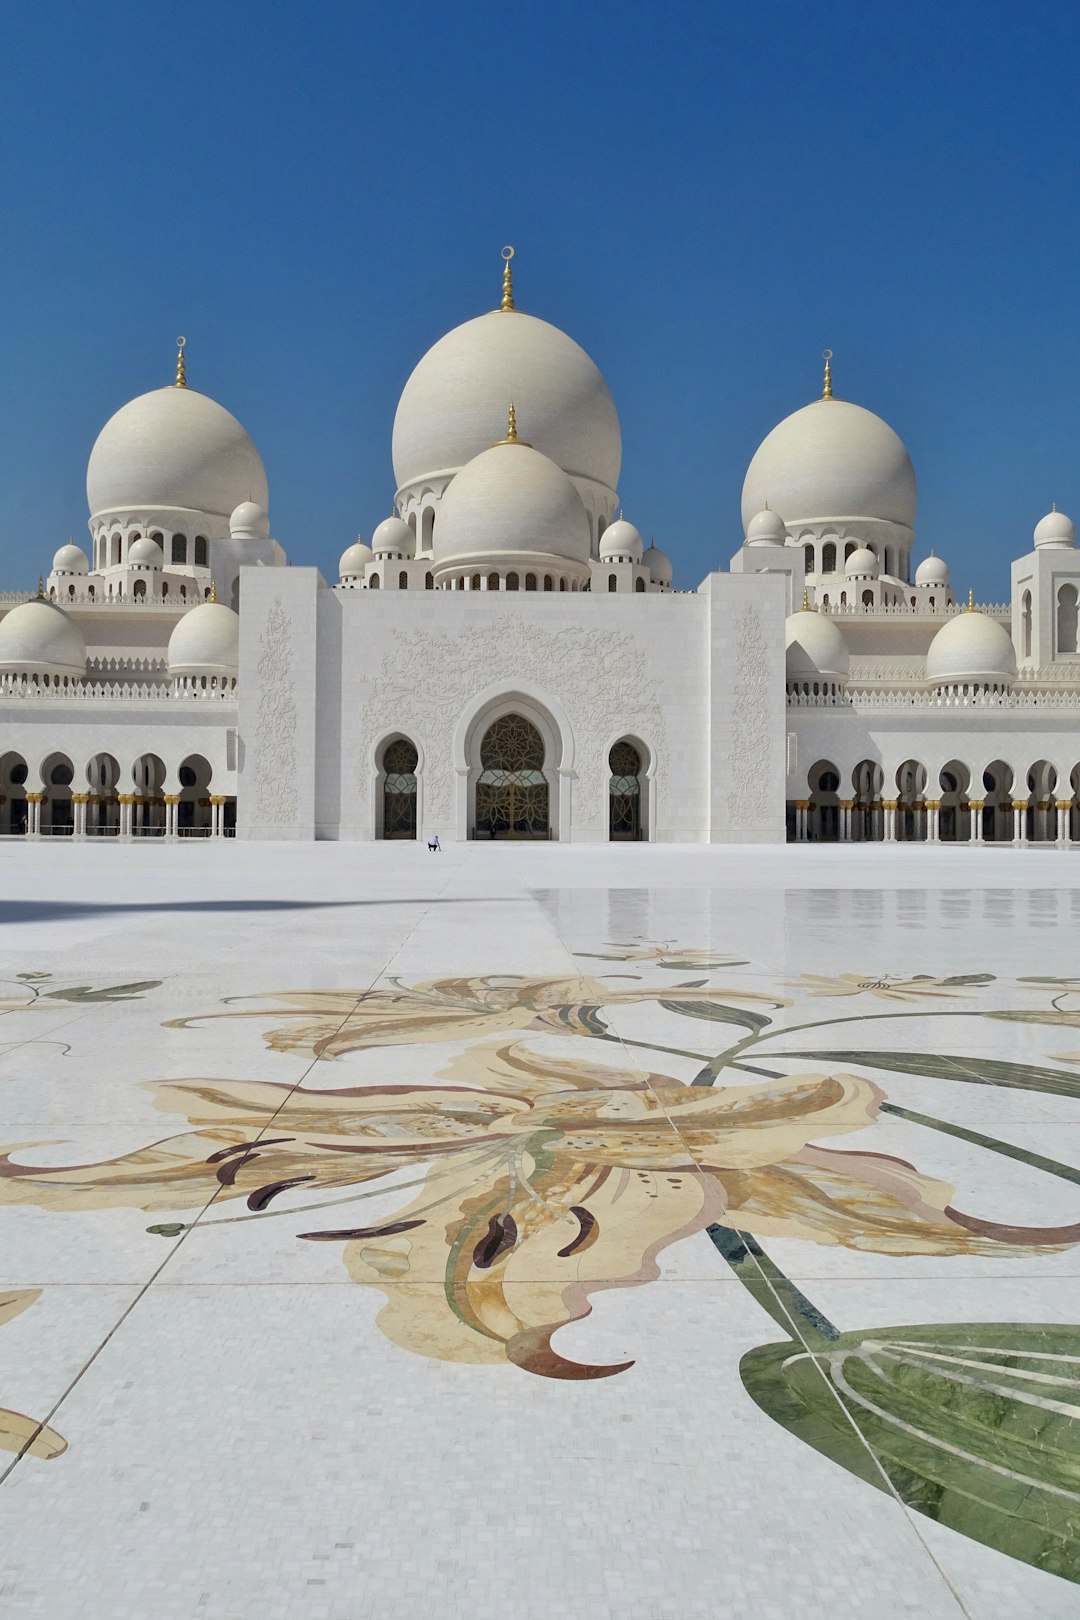 Landmark photo spot Al Rawdah - Abu Dhabi - United Arab Emirates Al Dhafra - Abu Dhabi - United Arab Emirates